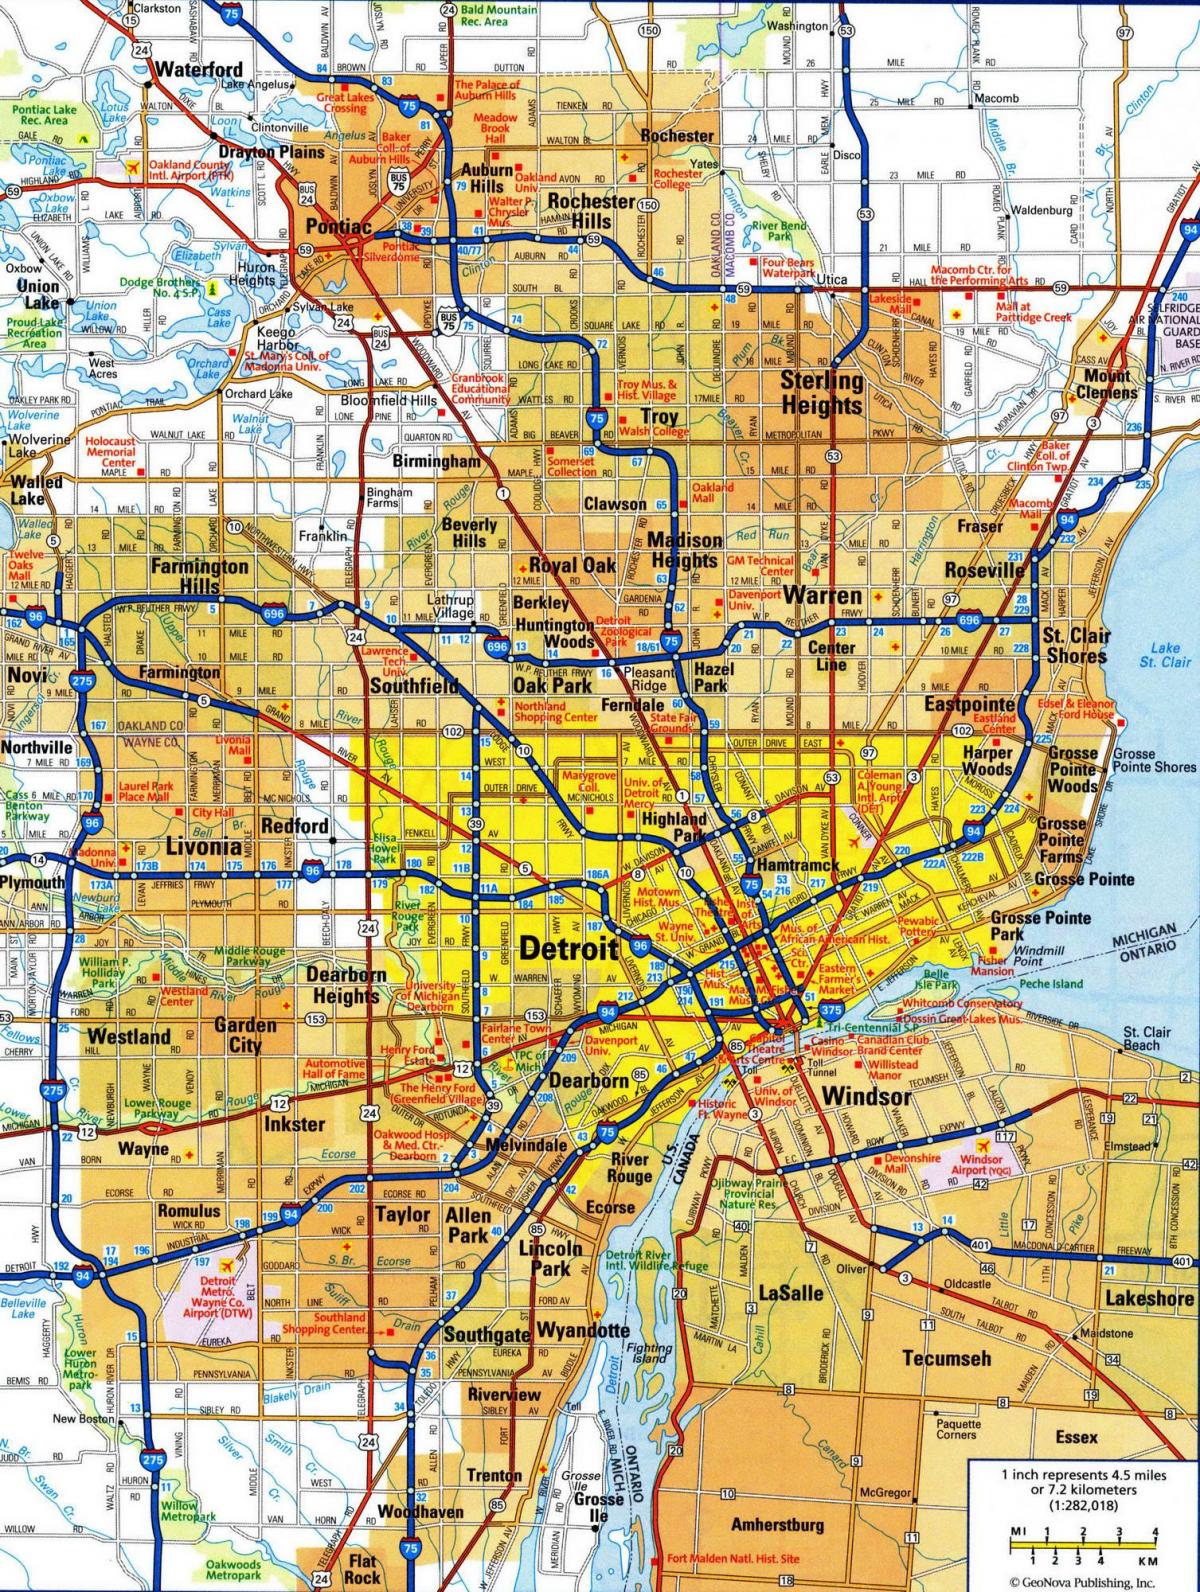 Plan de la ville de Detroit